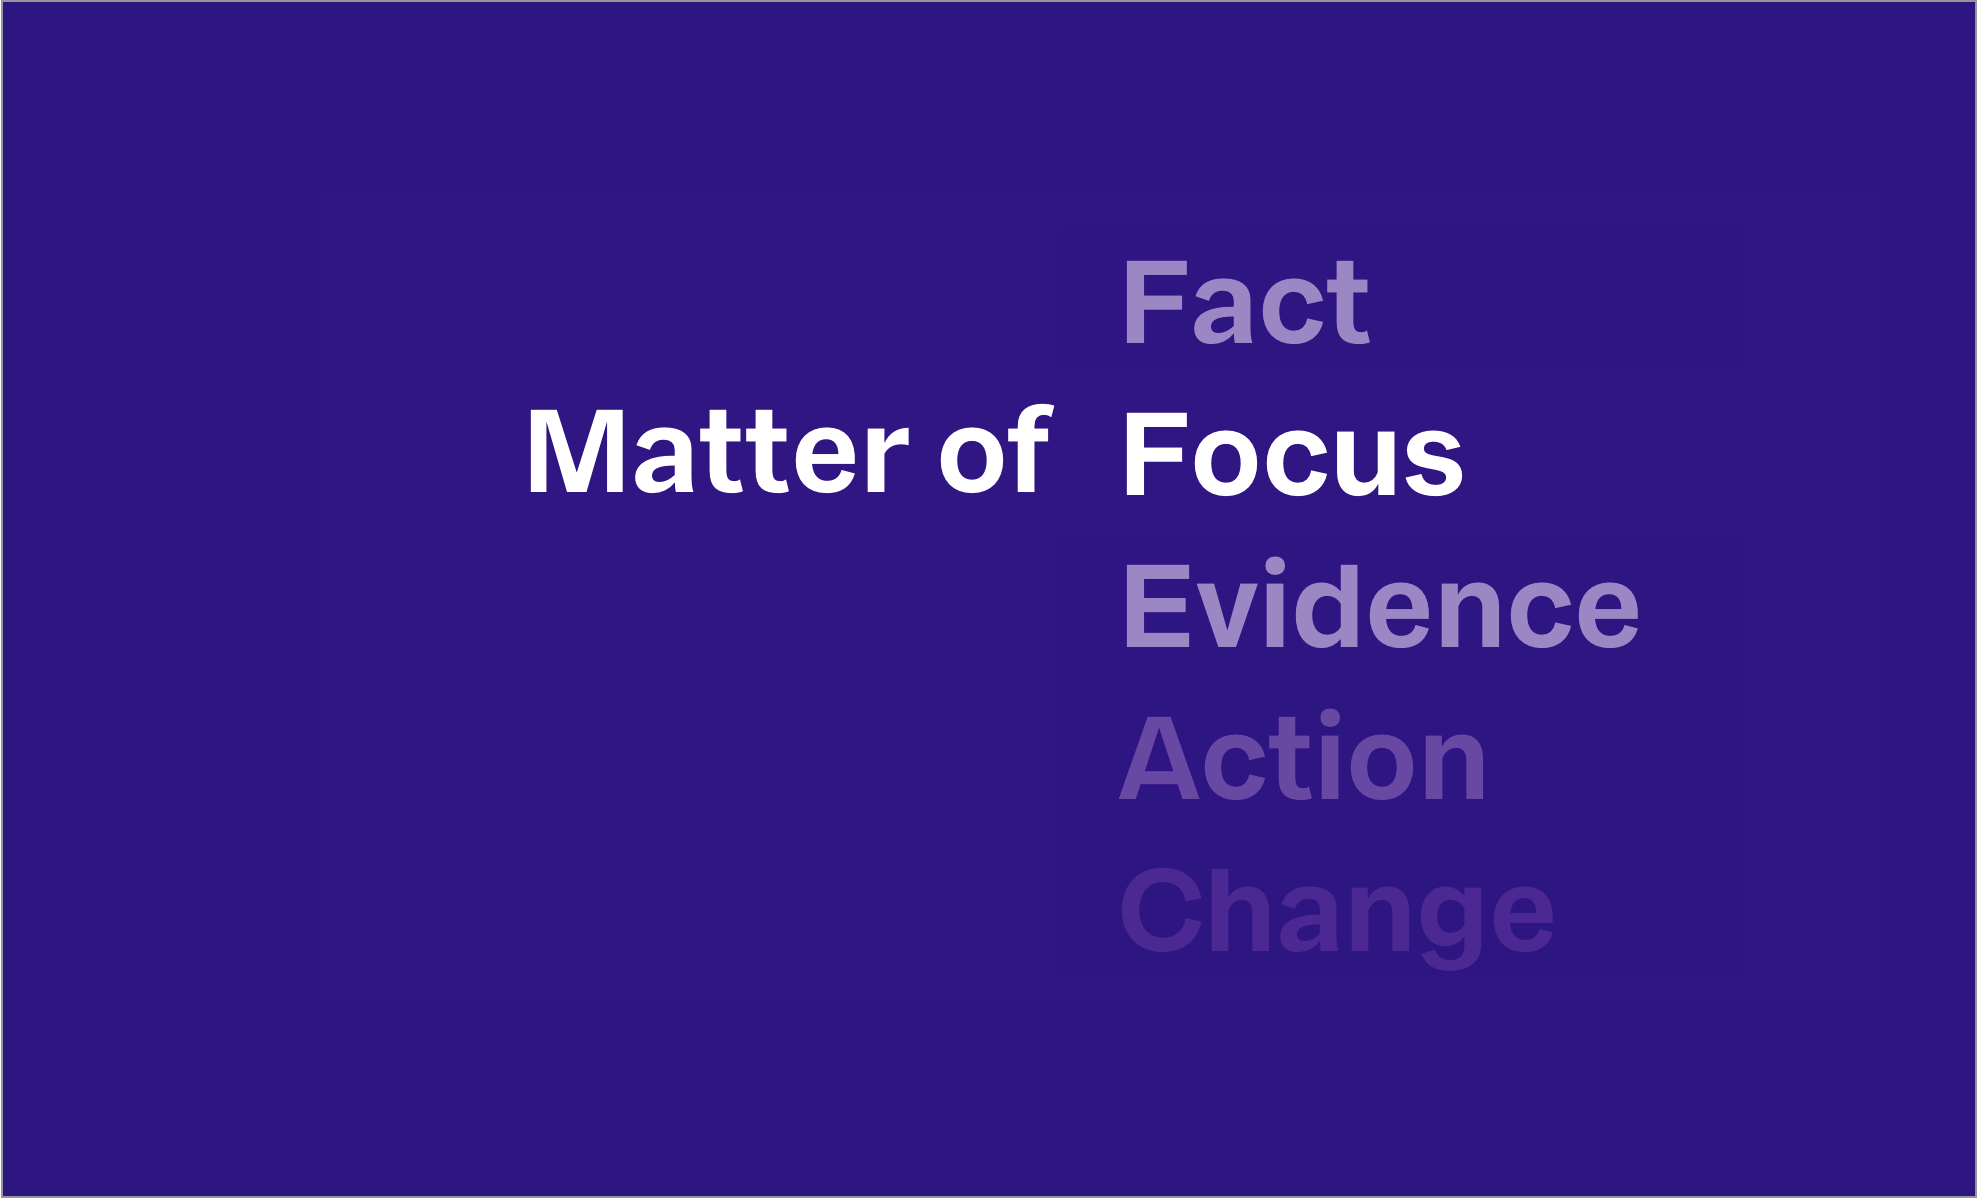 “Matter of Focus” presentation slide on a blue background